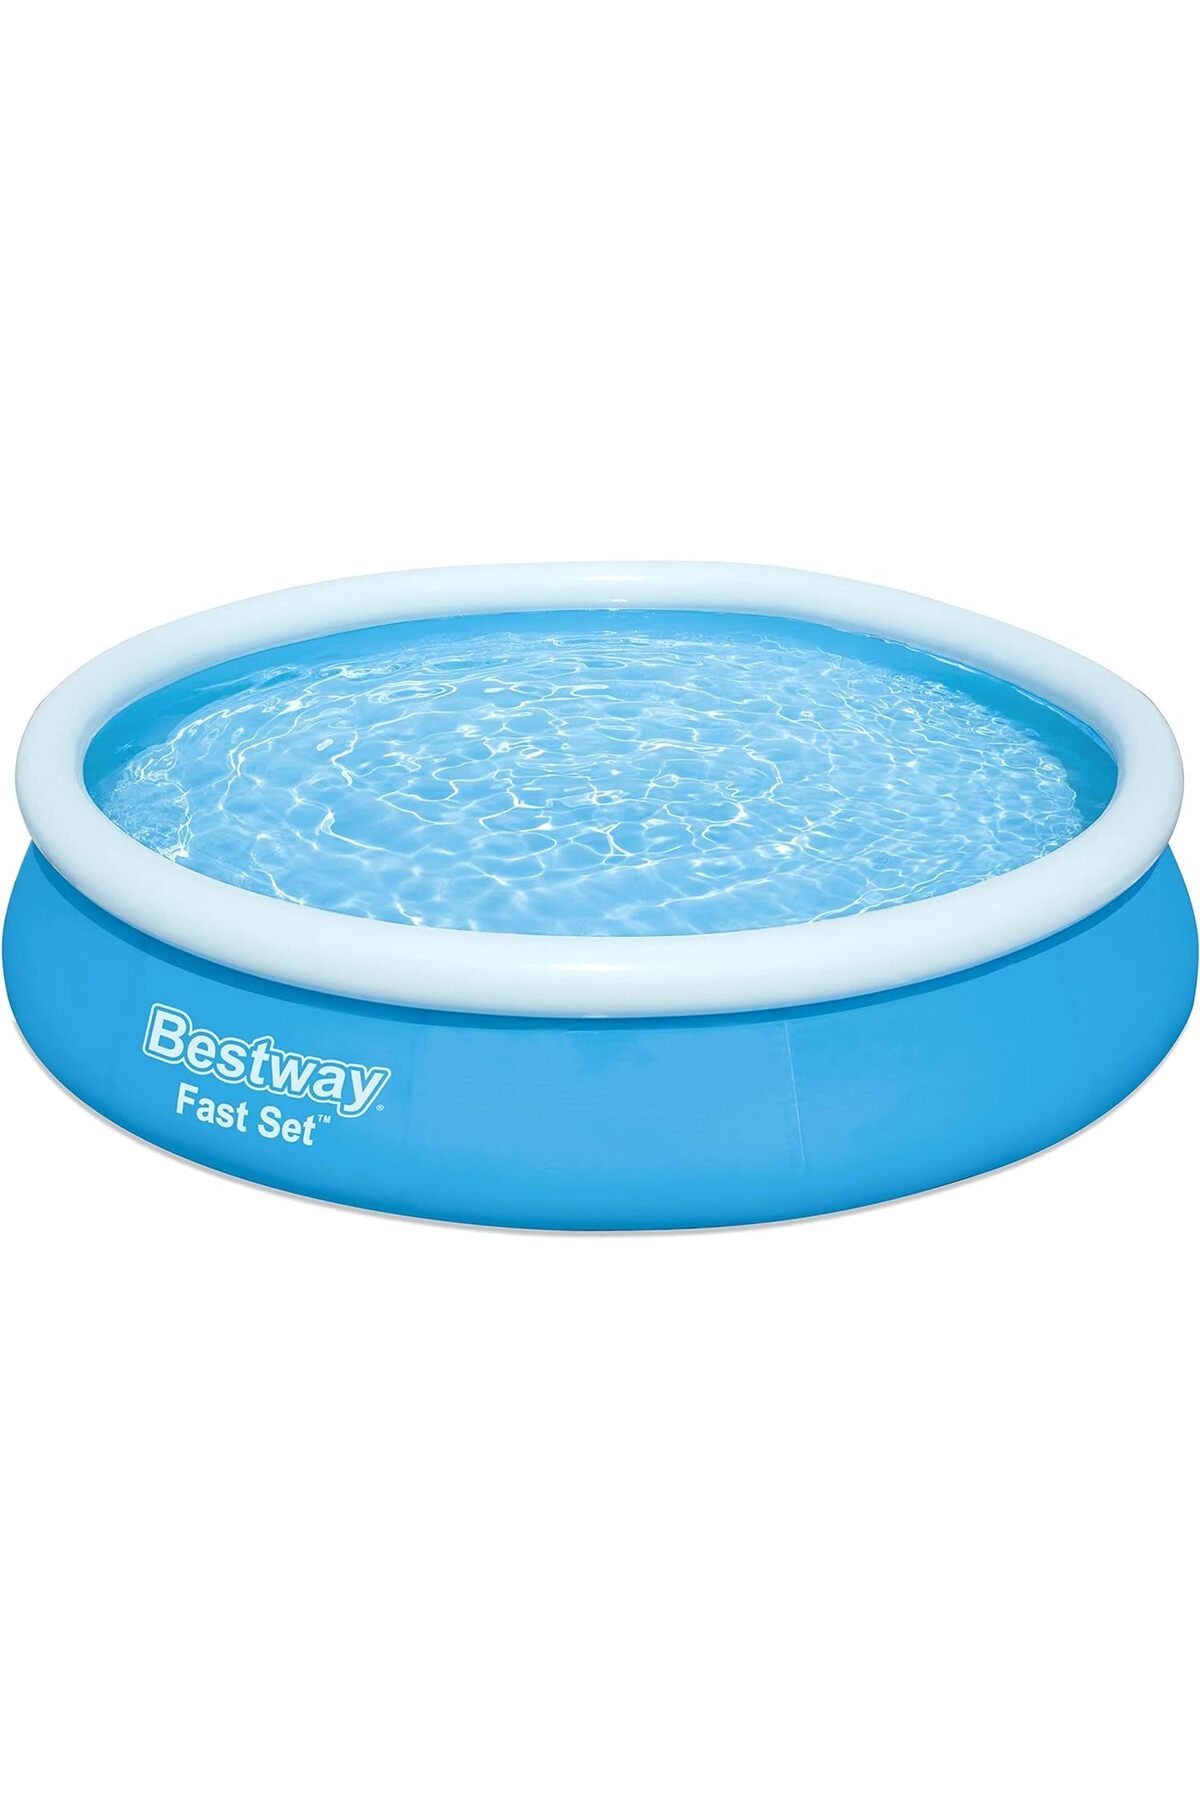 Bestway Fast Set Yüzme Havuzu, çocuklar ve yetişkinler için aile çocuk havuzu; 5377L, 3,66 m x 76 cm